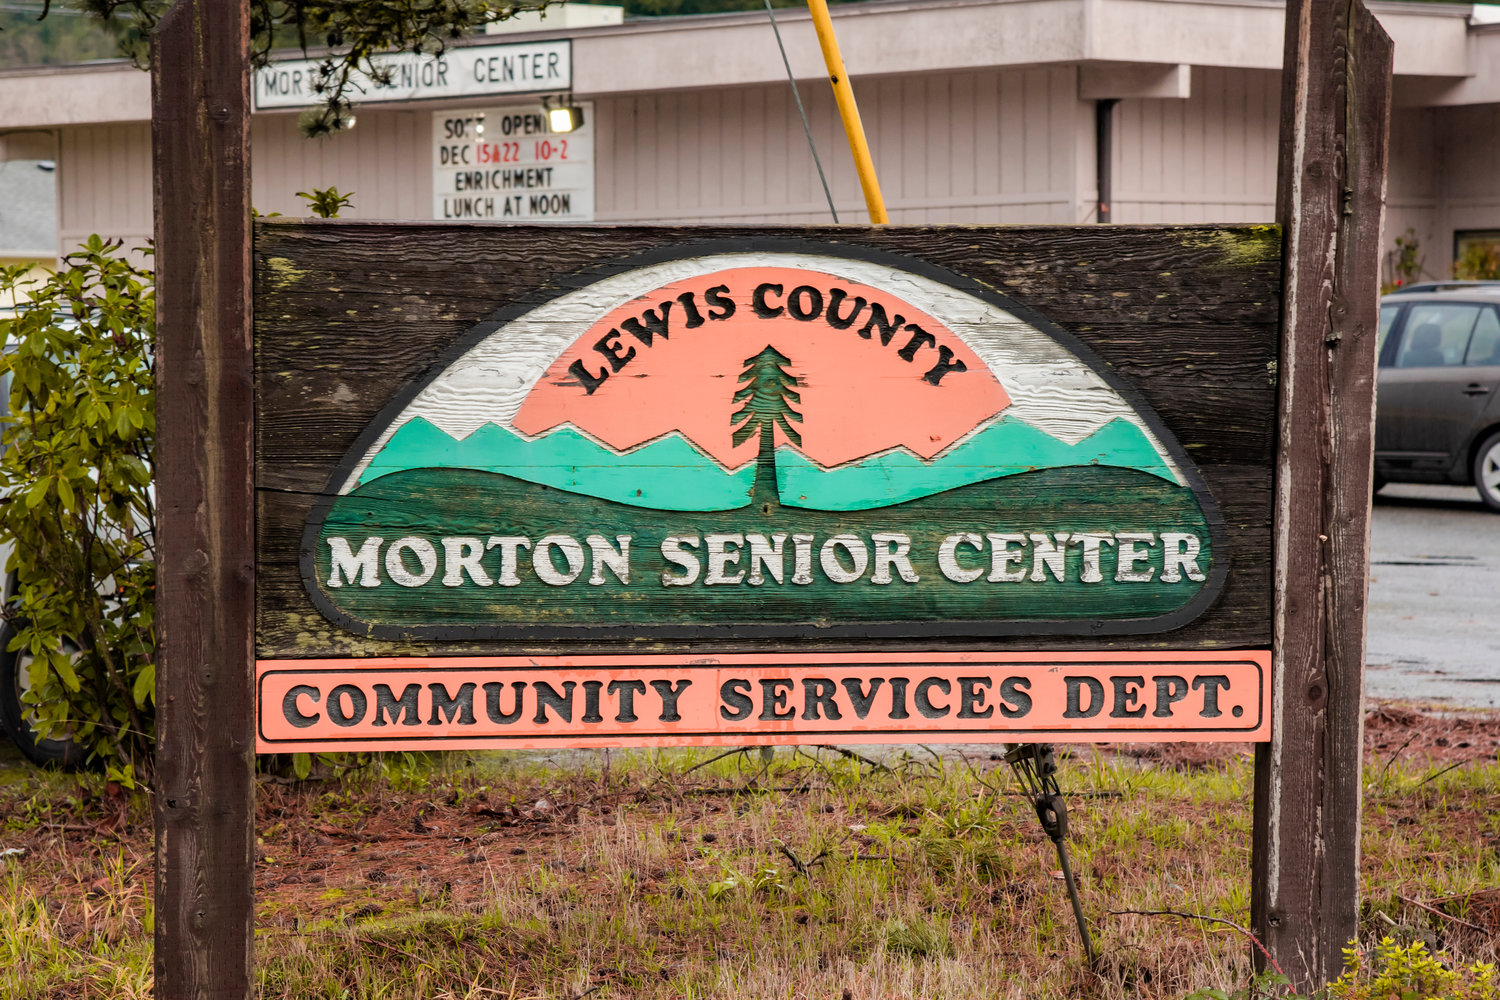 The Morton Senior Center is located at 103 Westlake Avenue in Morton.